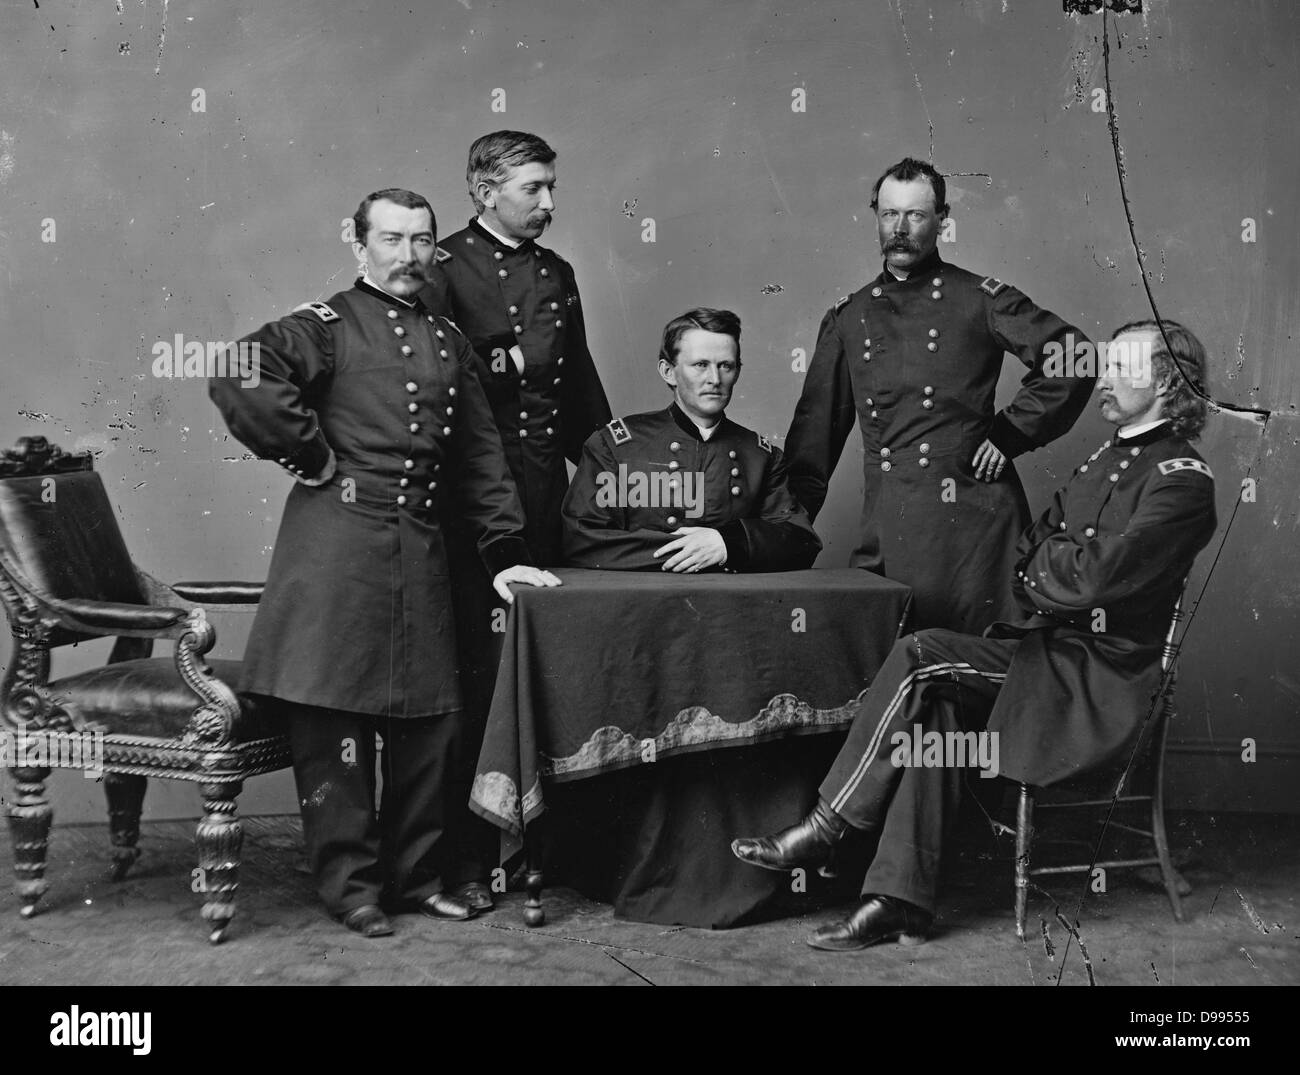 General Philip Sheridan (1831-1888), steht, und seinen Mitarbeitern, Beamten während der Amerikanische Bürgerkrieg 1860-1865. Amerikanische Armee Offizier und Union (Nördlichen) Allgemein. Stockfoto